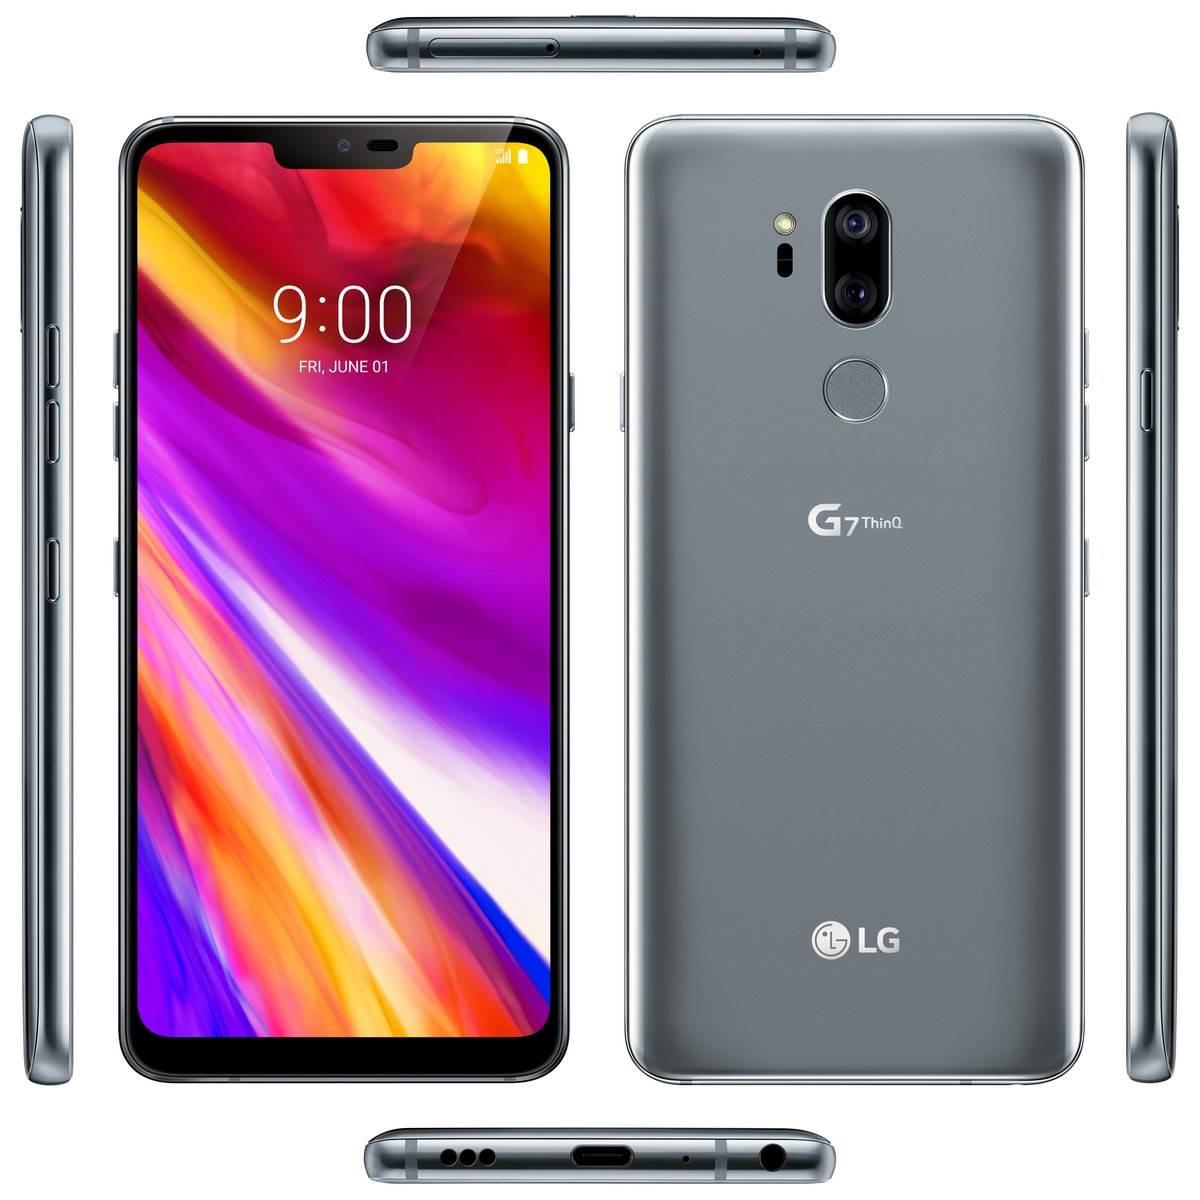 İşte karşınızda çentikli tasarımın yeni temsilcisi LG G7 ThinQ